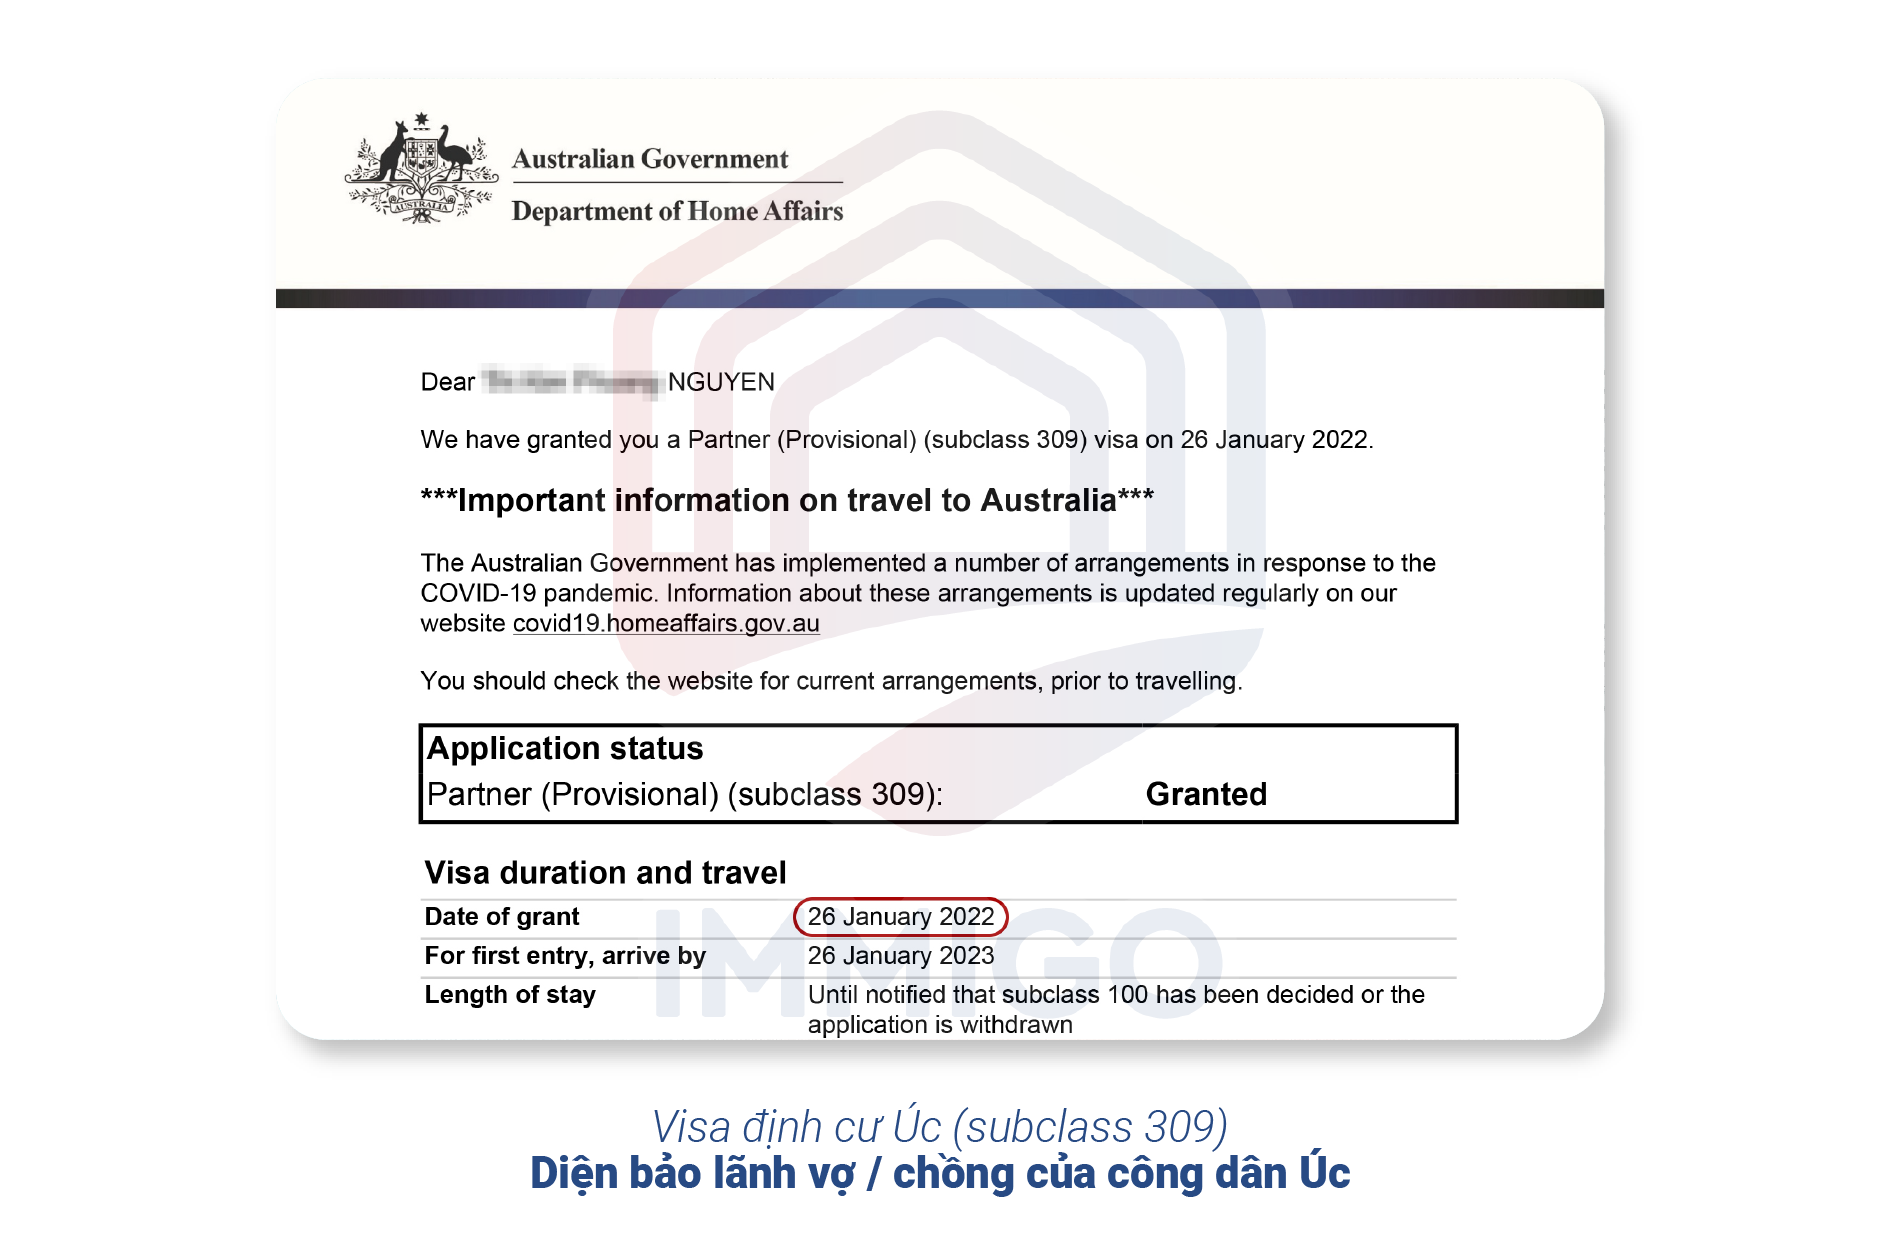 Visa định cư Úc subclass 309 (diện bảo lãnh vợ/chồng)